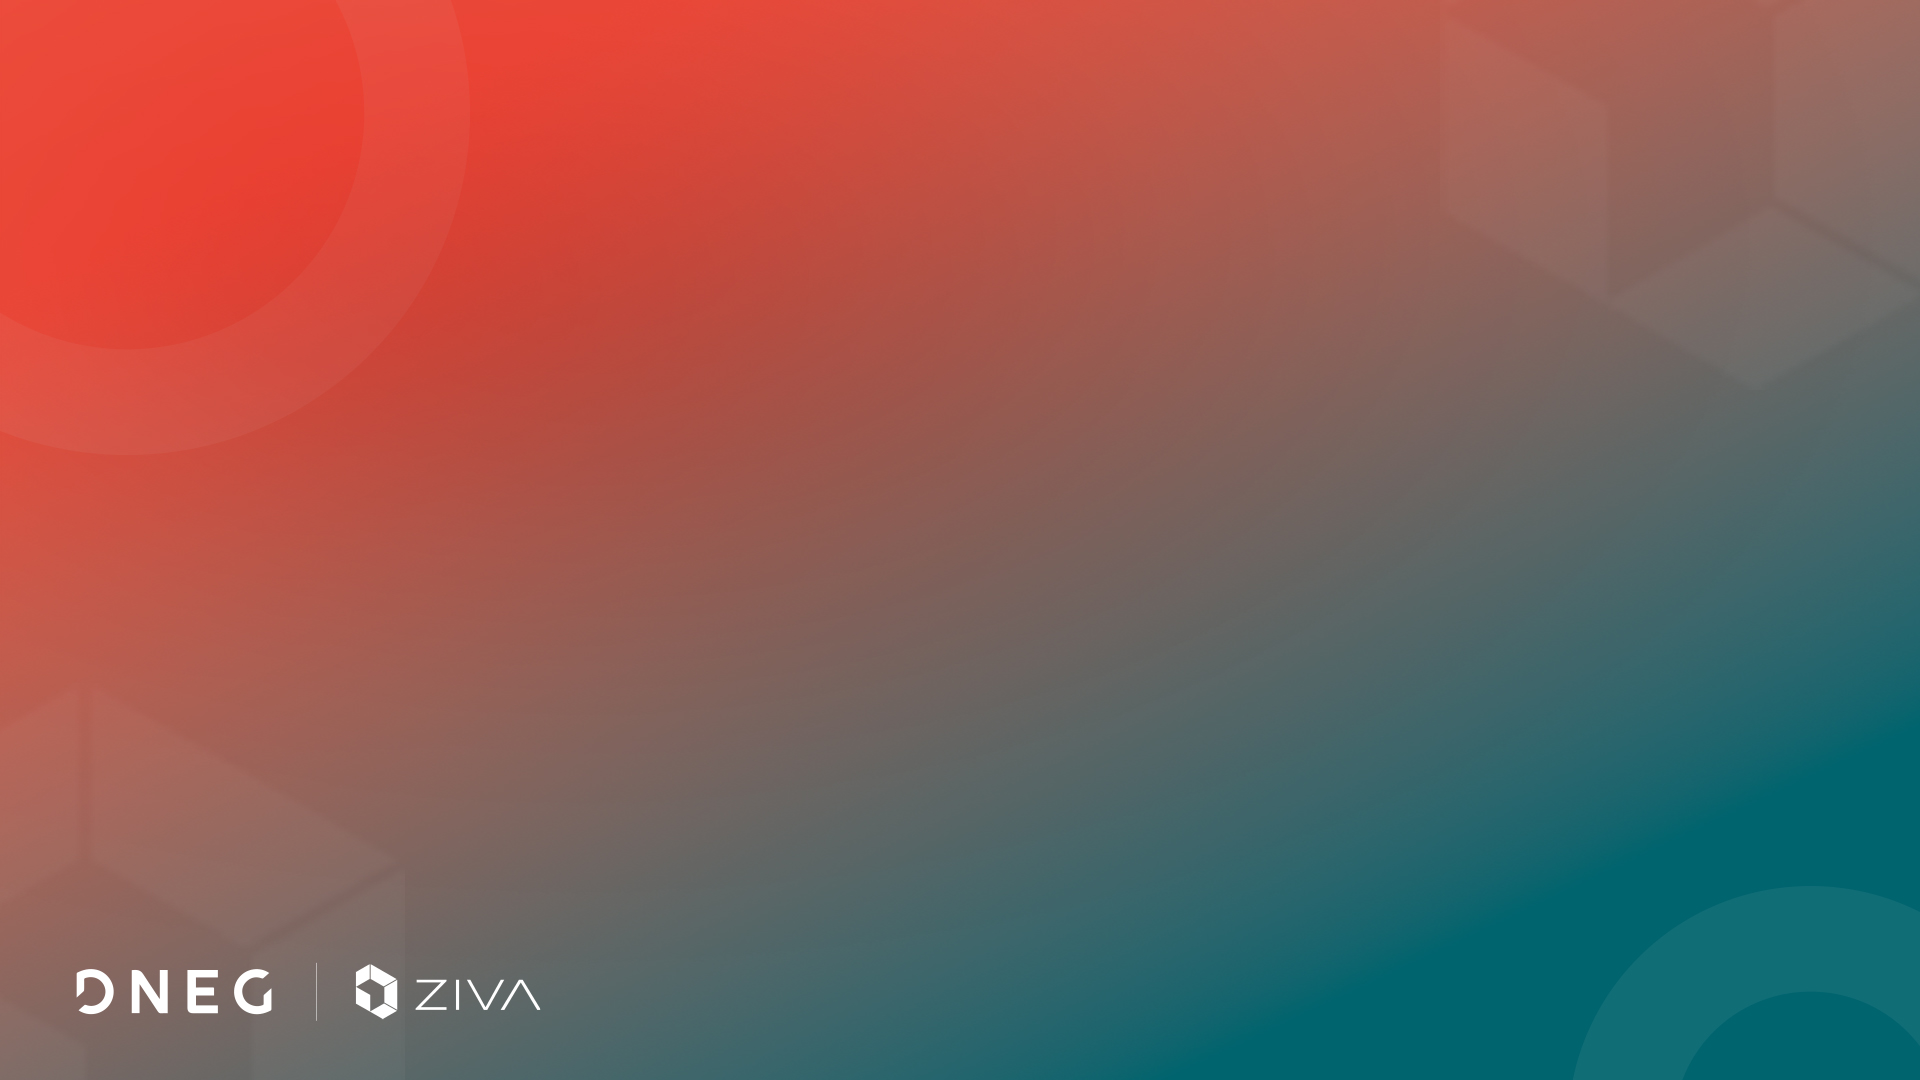 DNEG ha acquisito la licenza esclusiva per Ziva Technologies da Unity